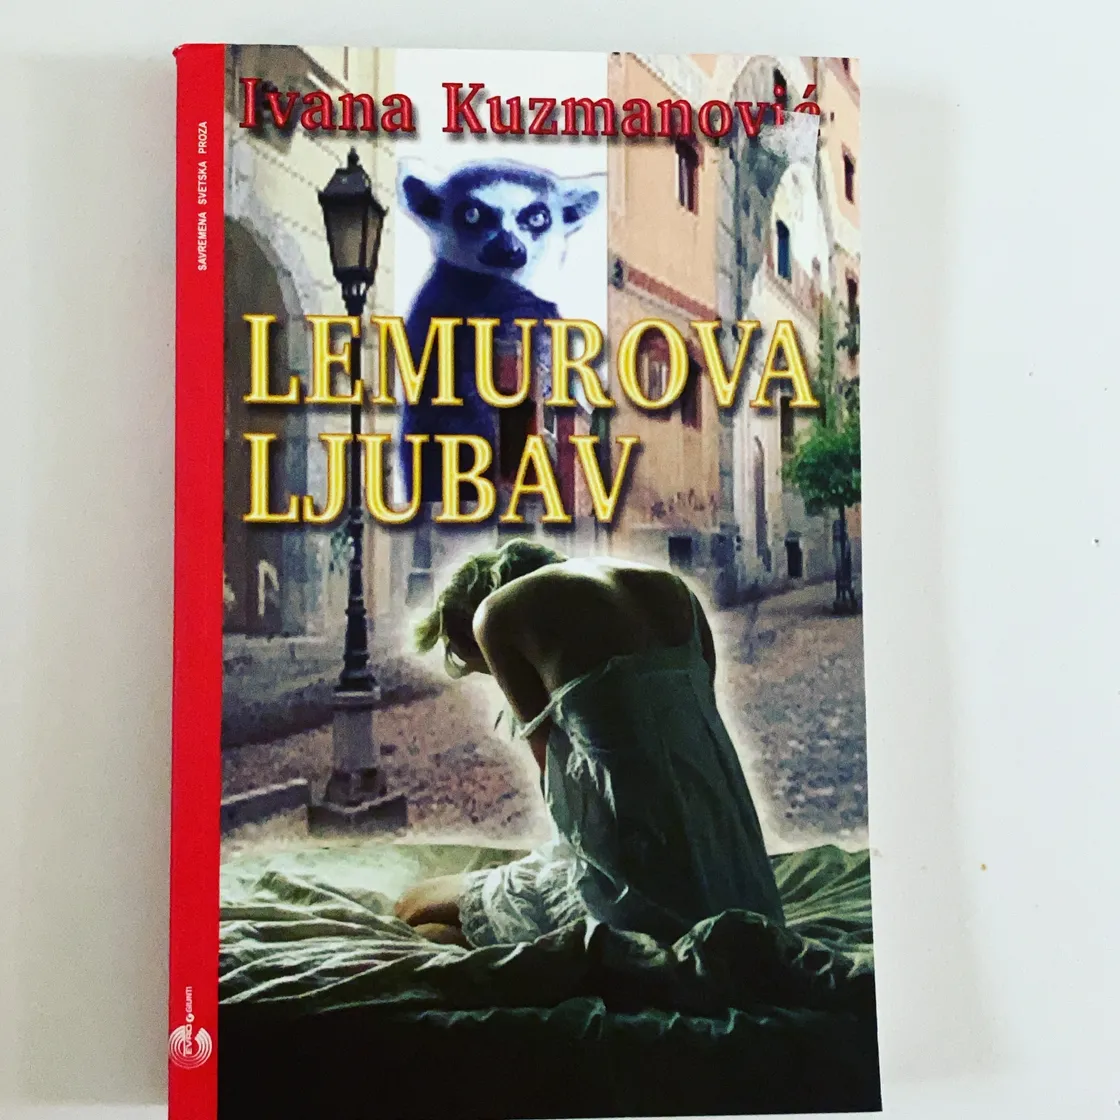 Lemurova Ljubav – Ivana Kuzmanovic